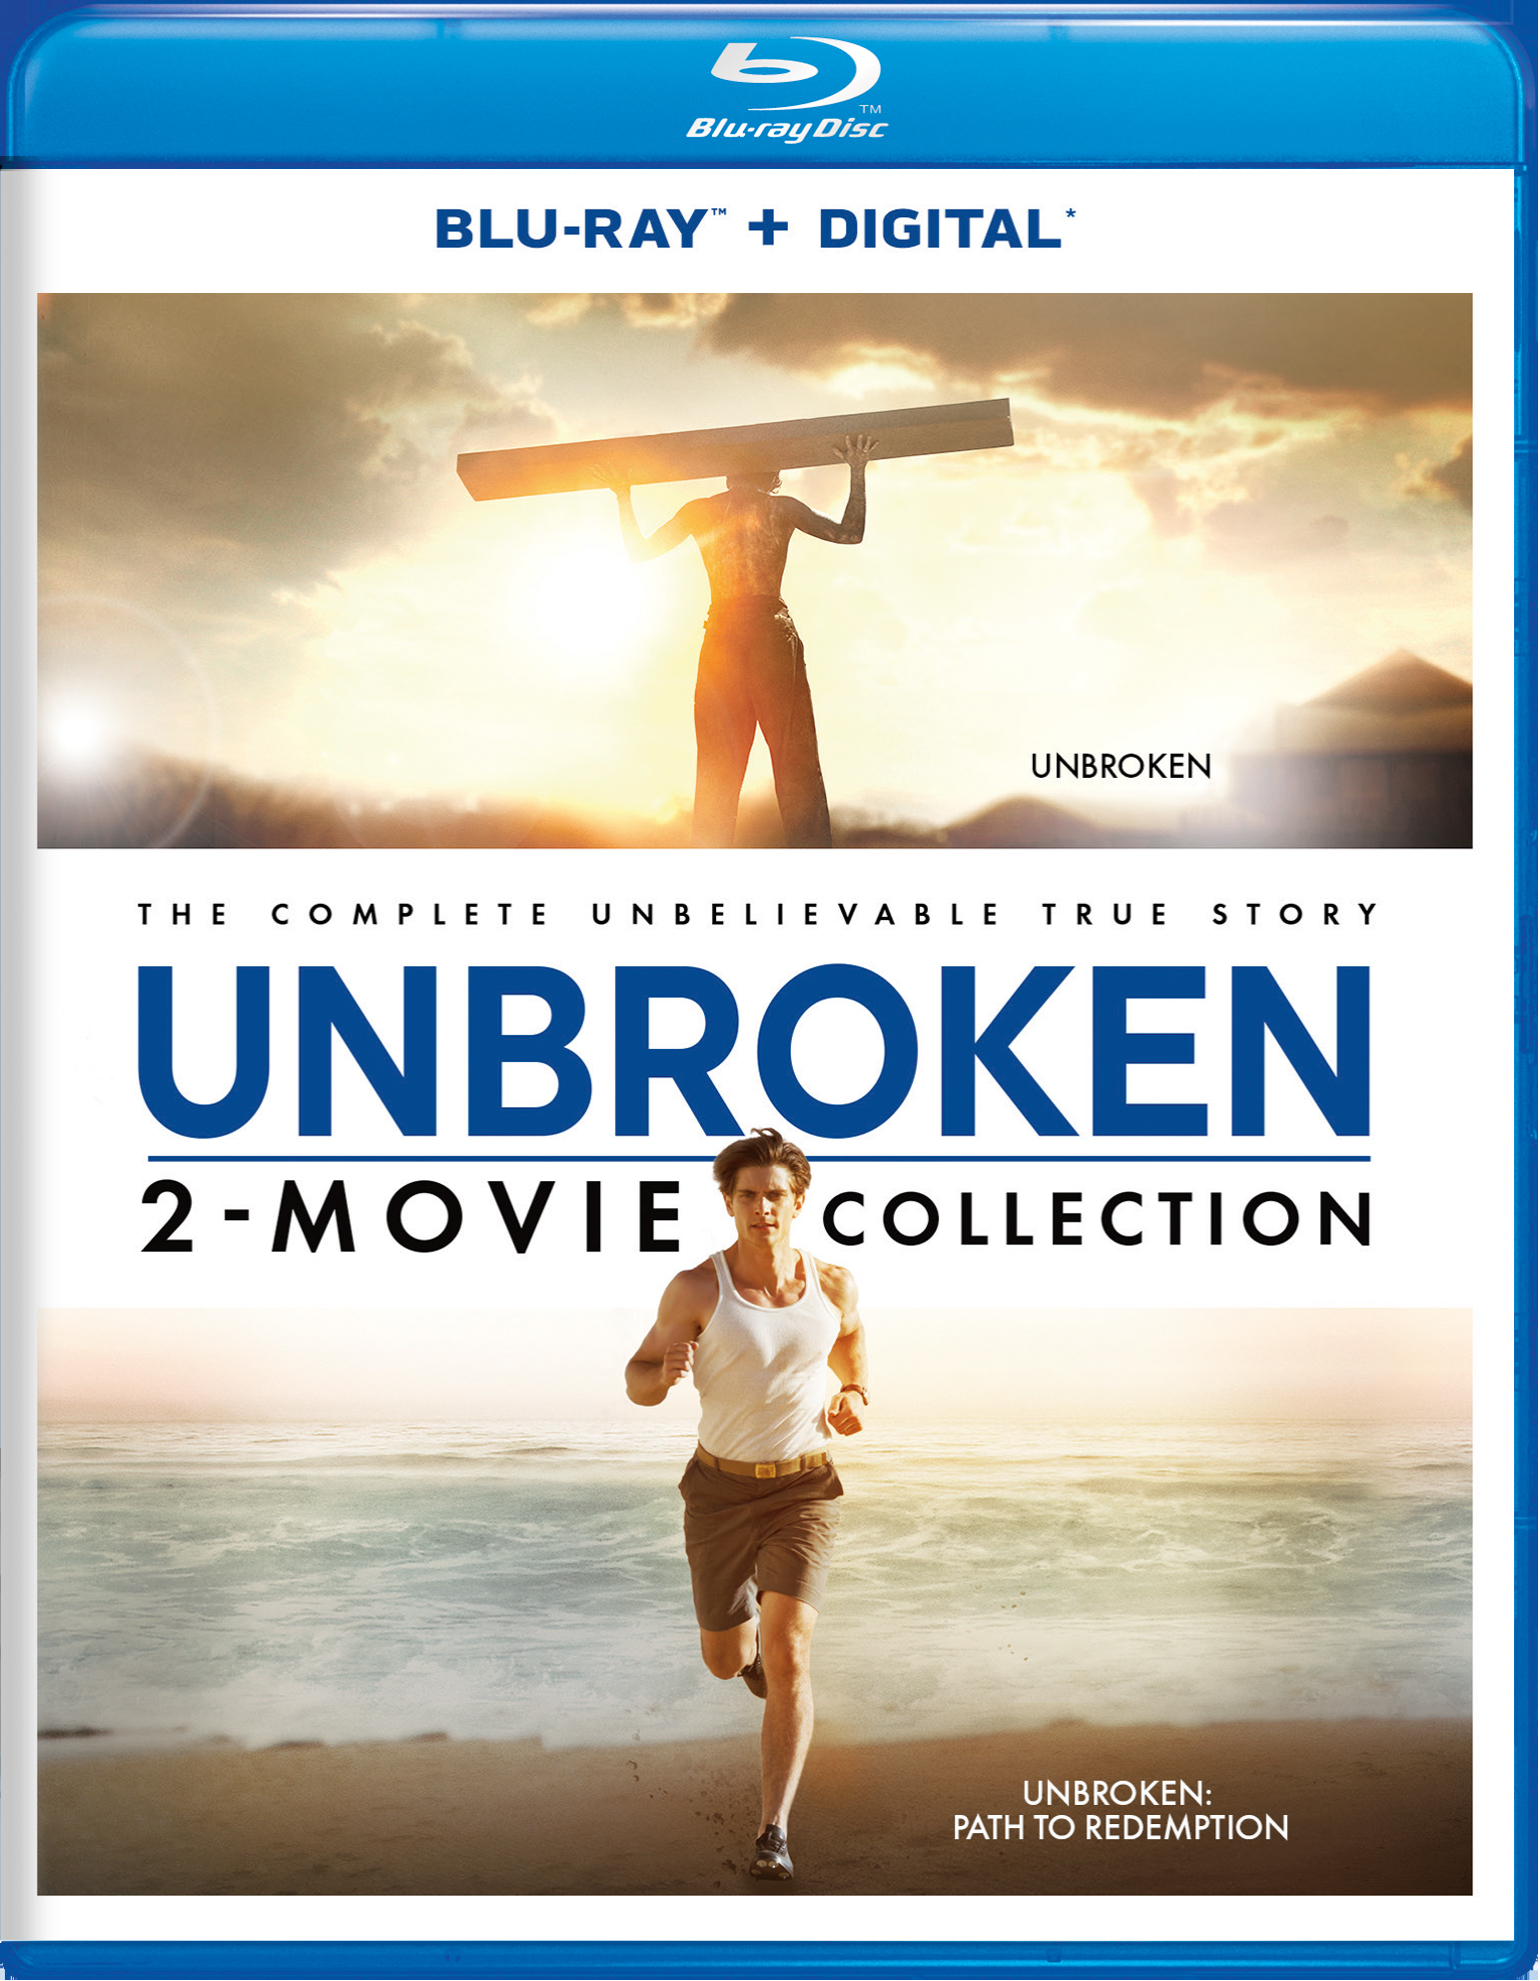 Unbroken/Unbroken - Path To Redemption (Blu-ray + Digital HD) - Blu-ray [ 2018 ]  - War Movies On Blu-ray - Movies On GRUV